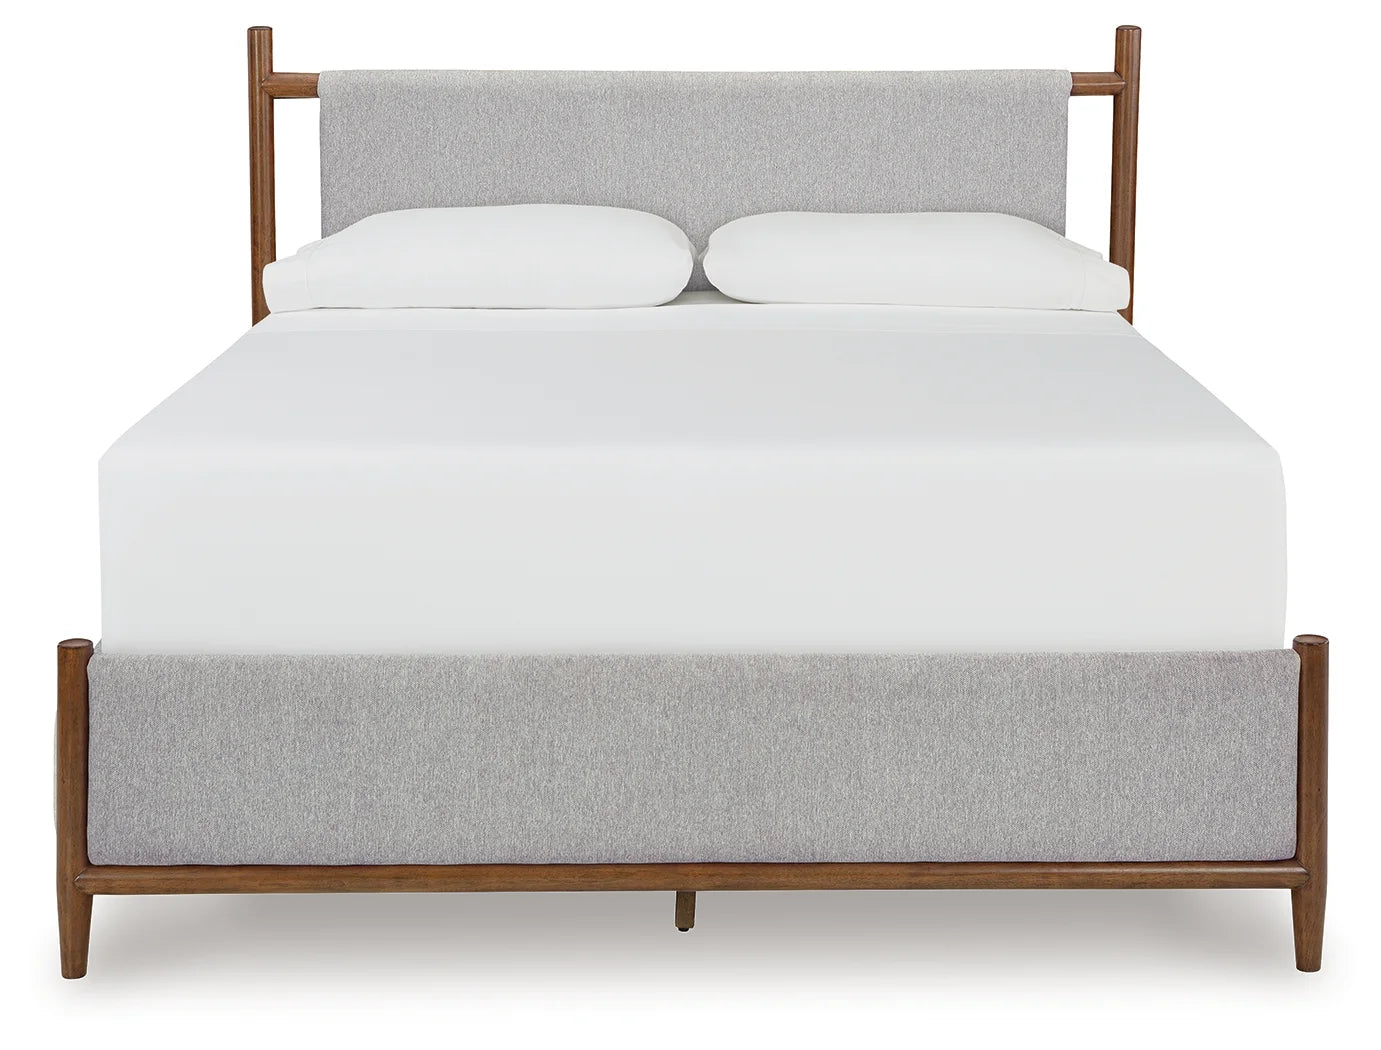 Lyncott - Brown - California King Upholstered Bed